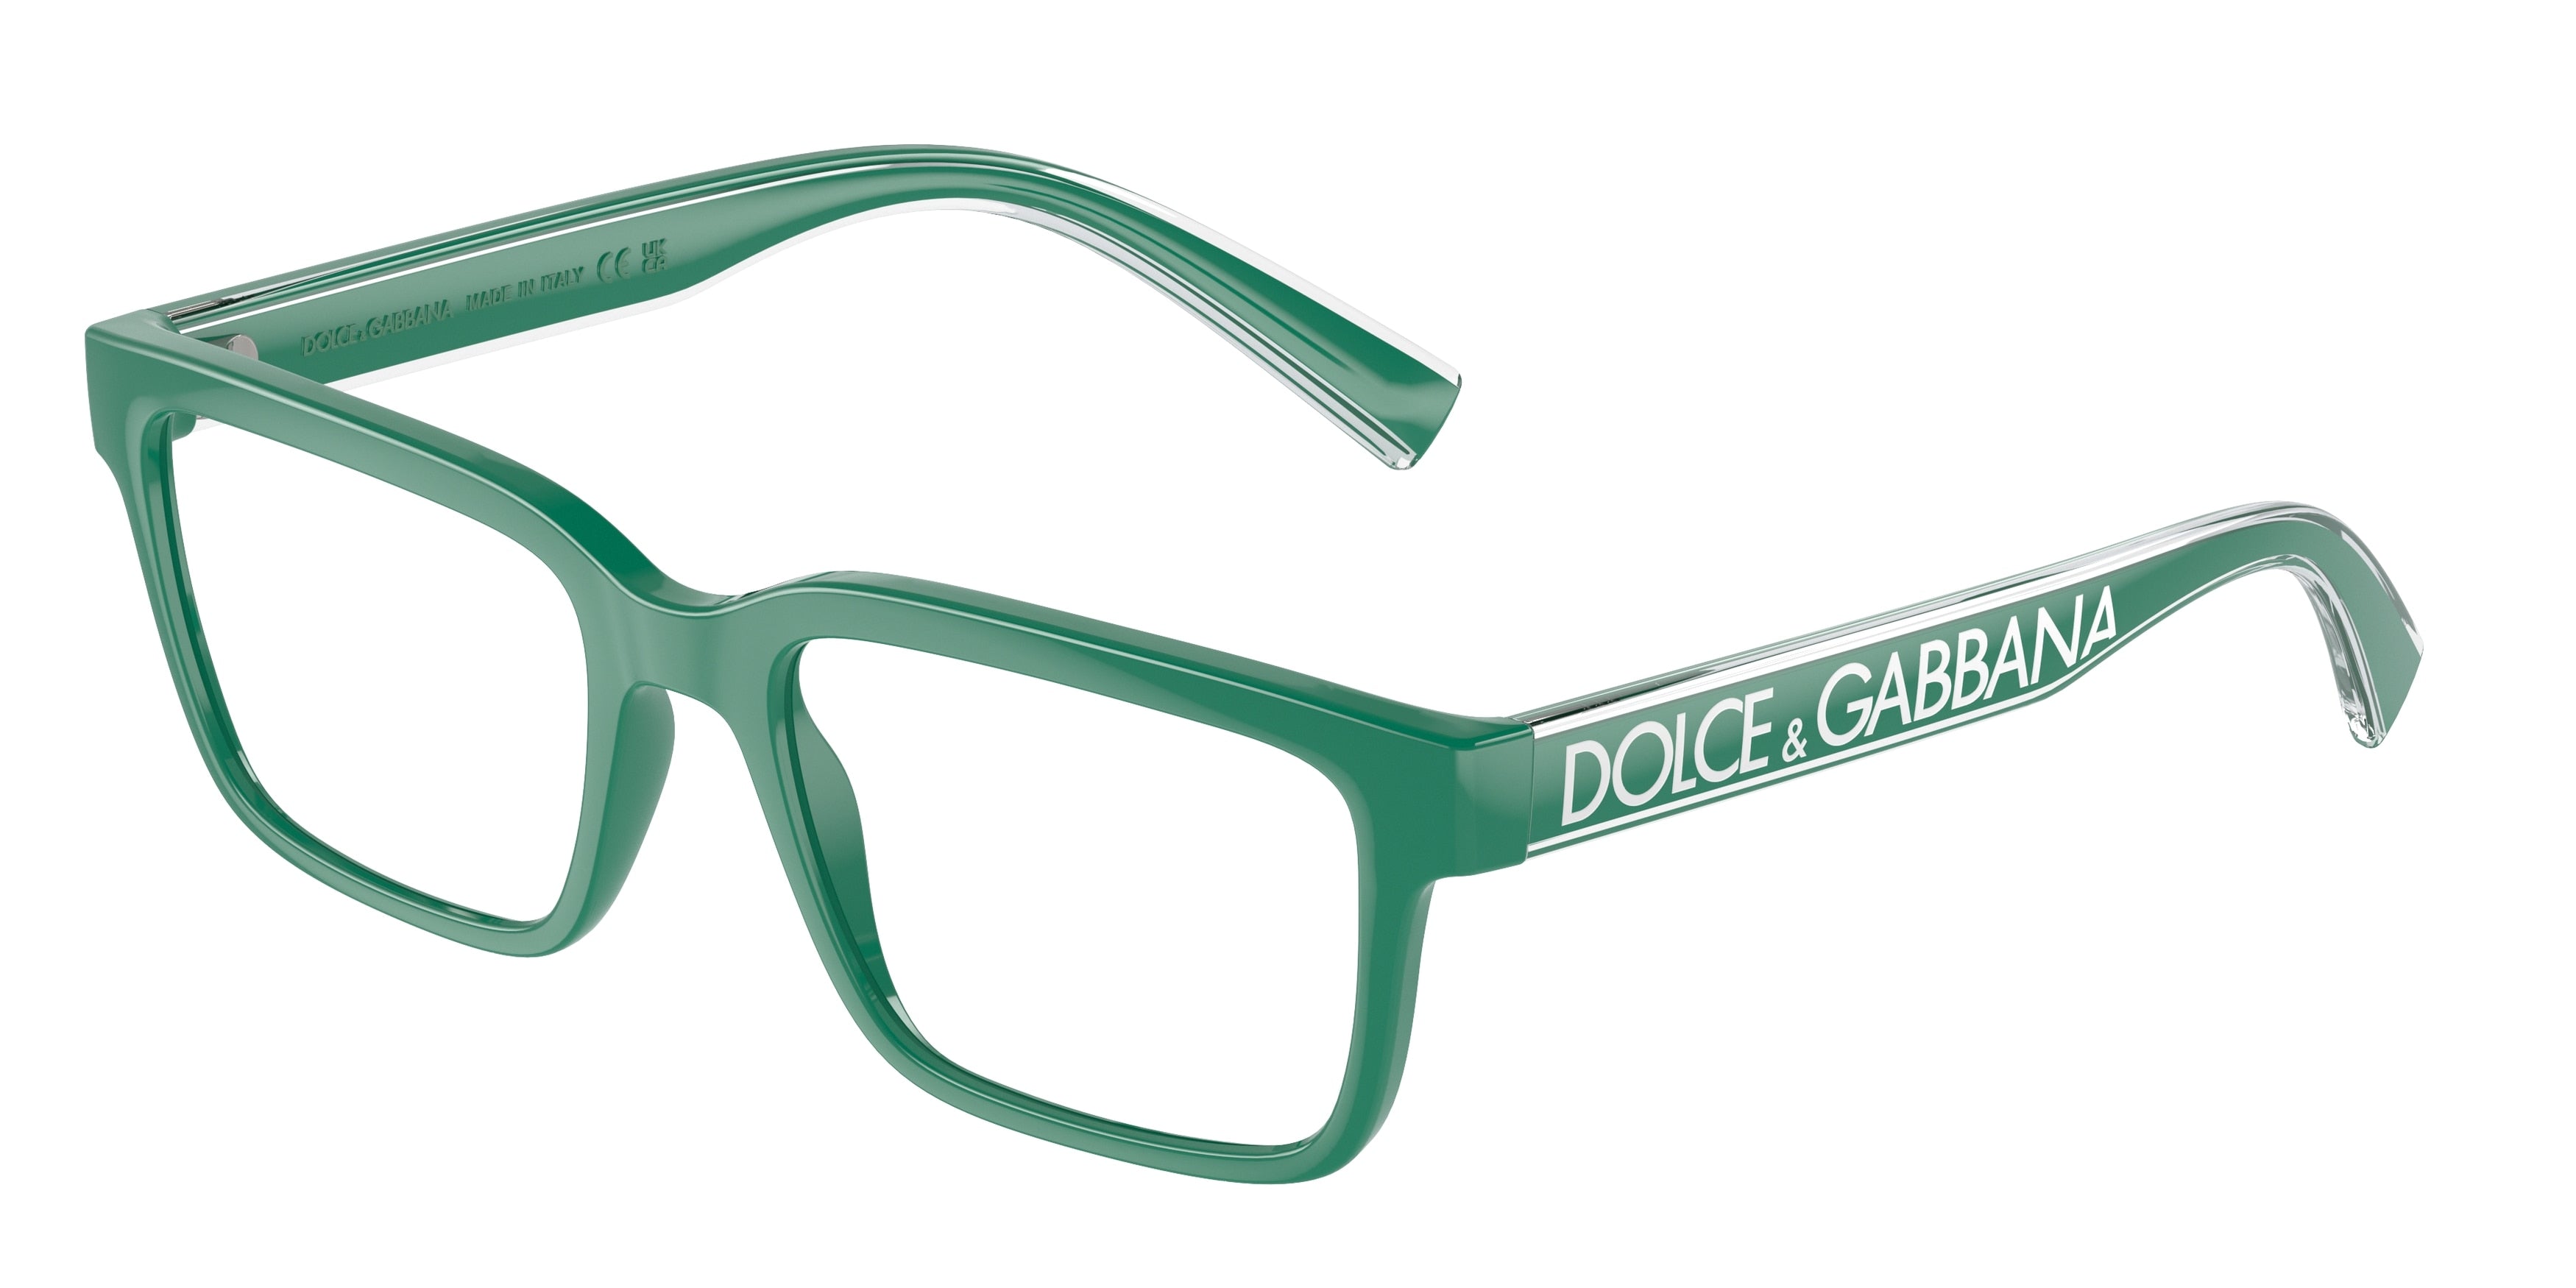 DOLCE & GABBANA DG5102 Rectangle Eyeglasses